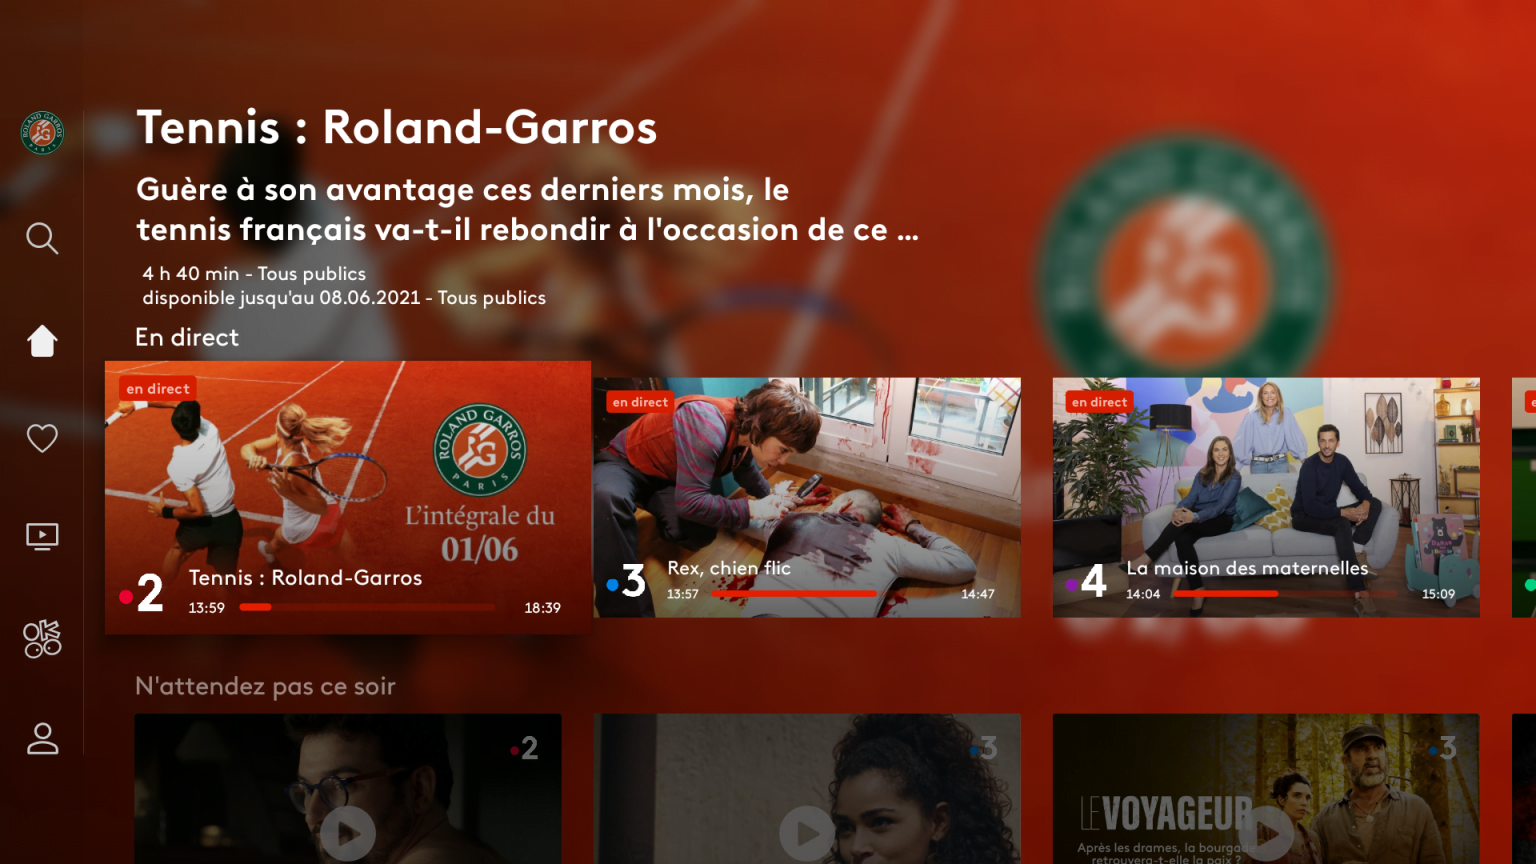 Roland-Garros en direct sur France.tv - Actus Free - Les actualités des